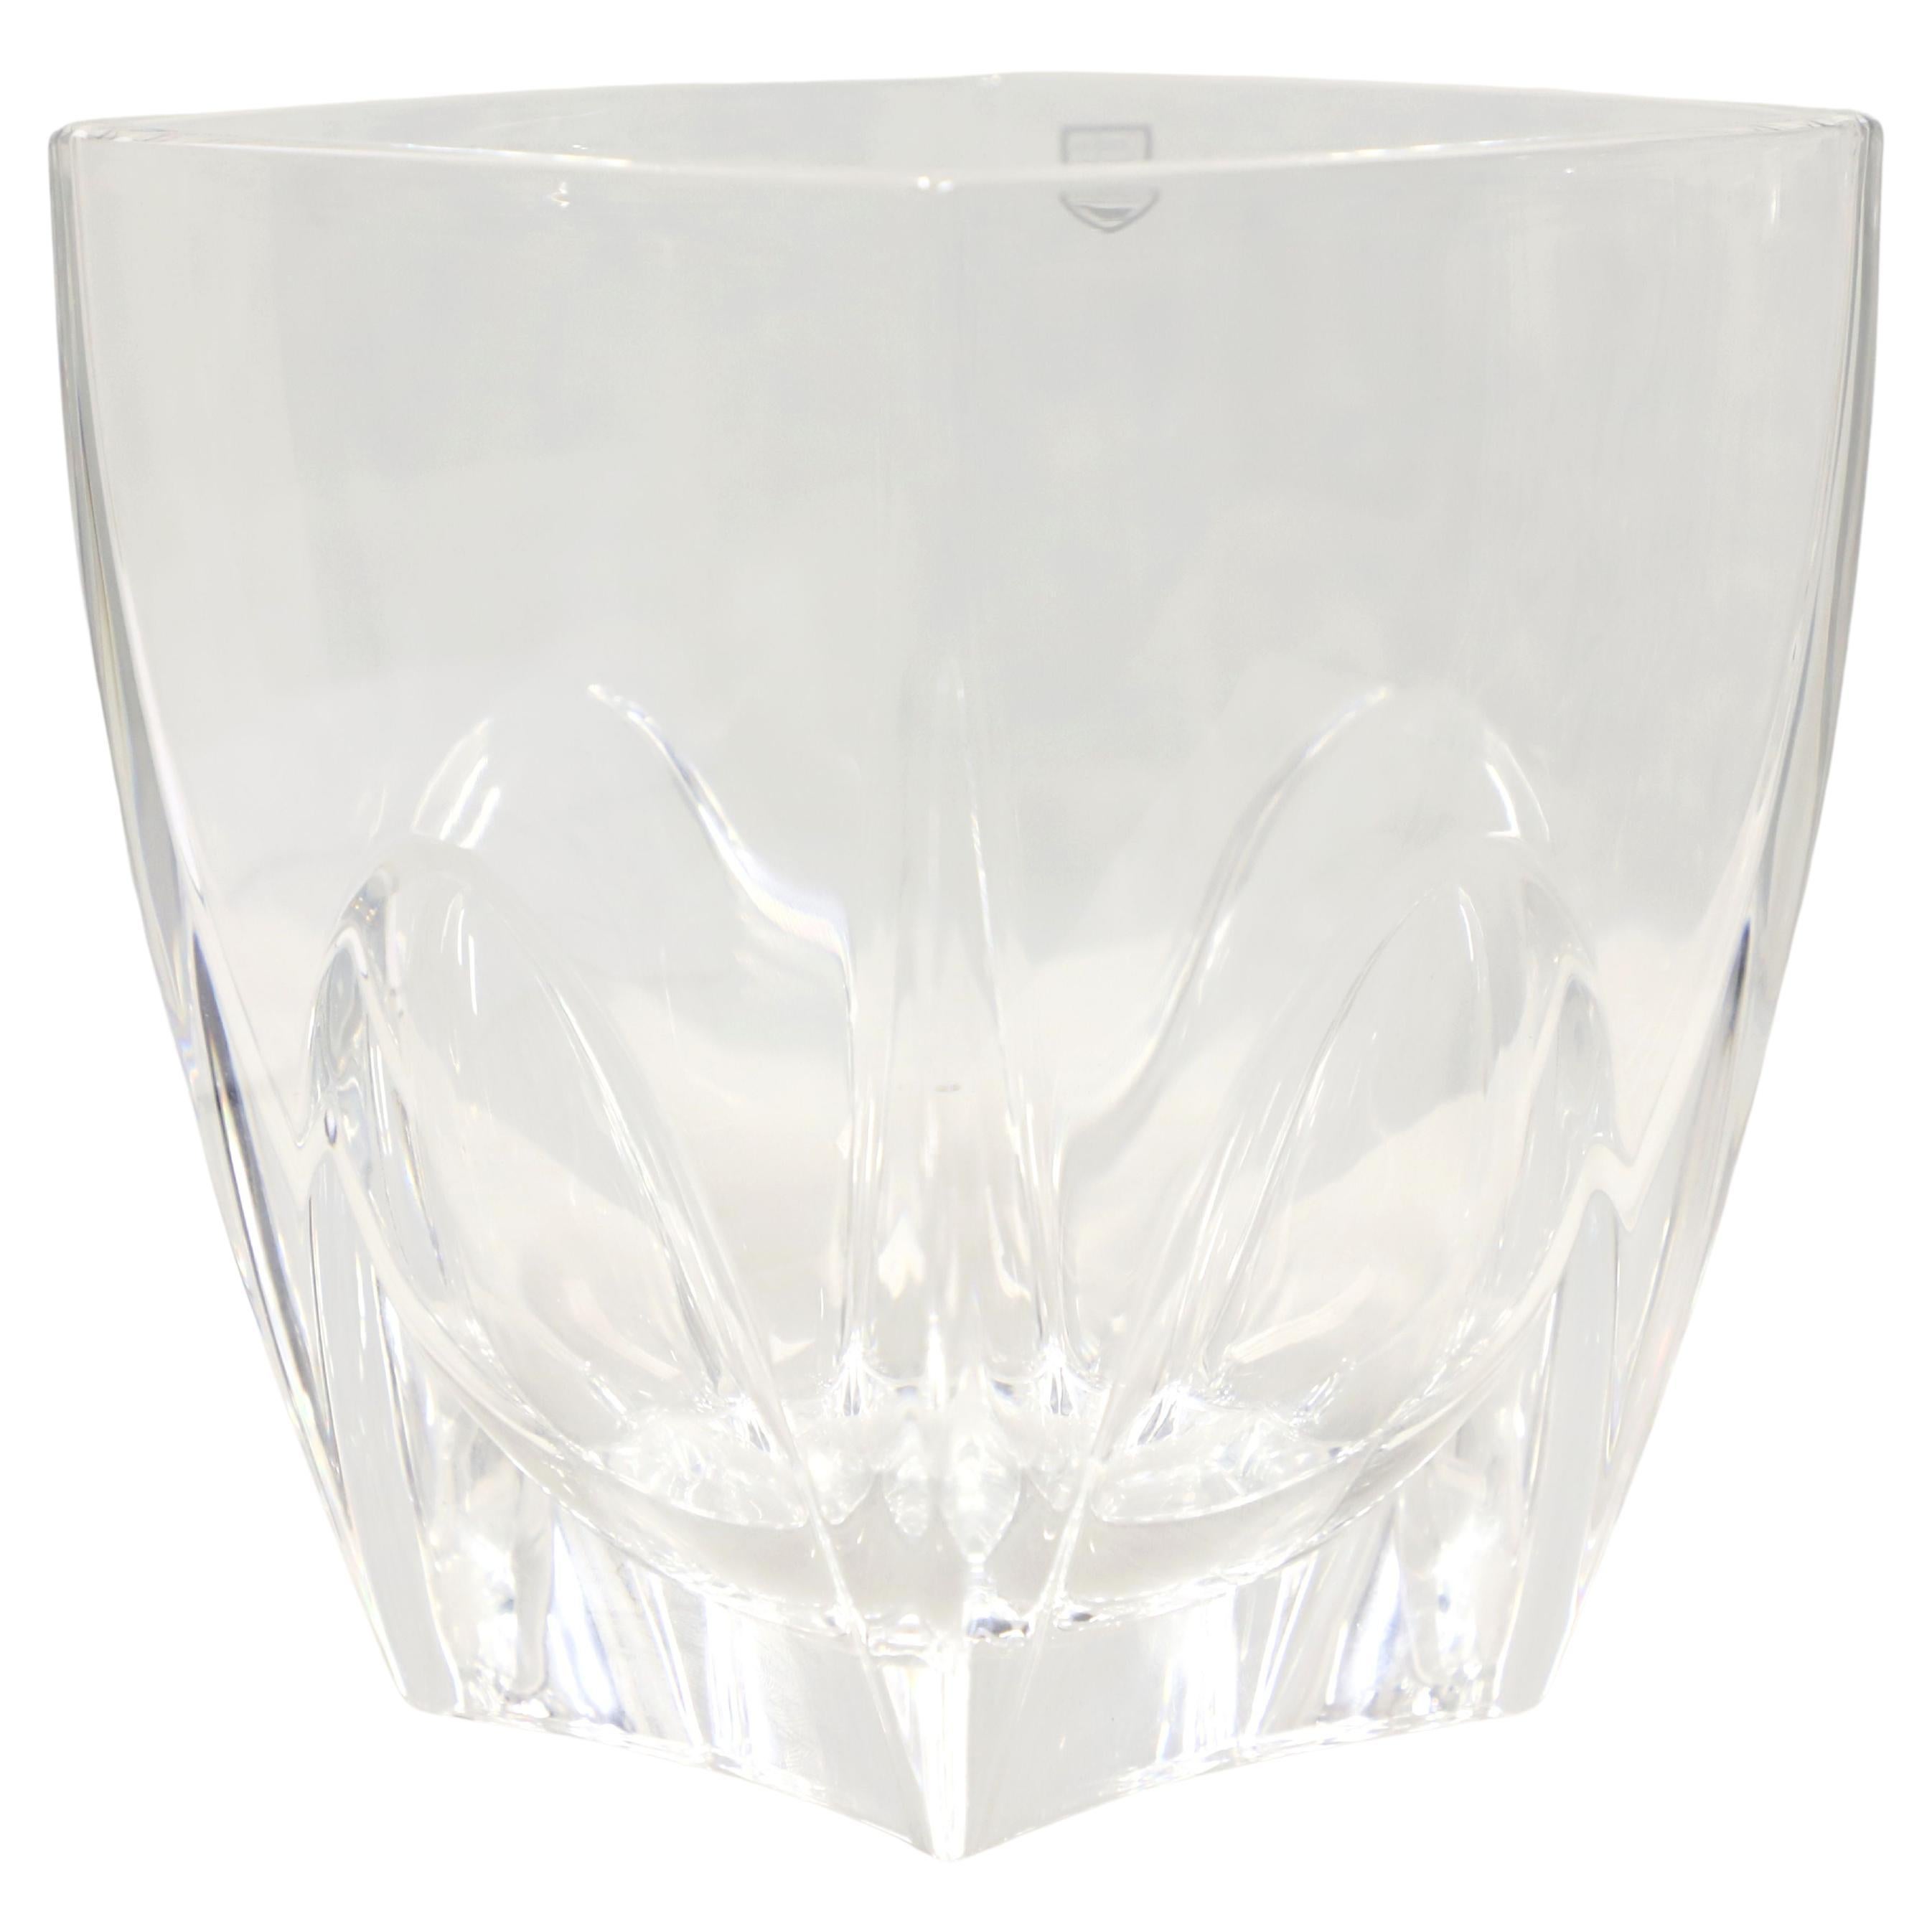 ORREFORS Sweden 7" Square Clear Crystal Vase - A